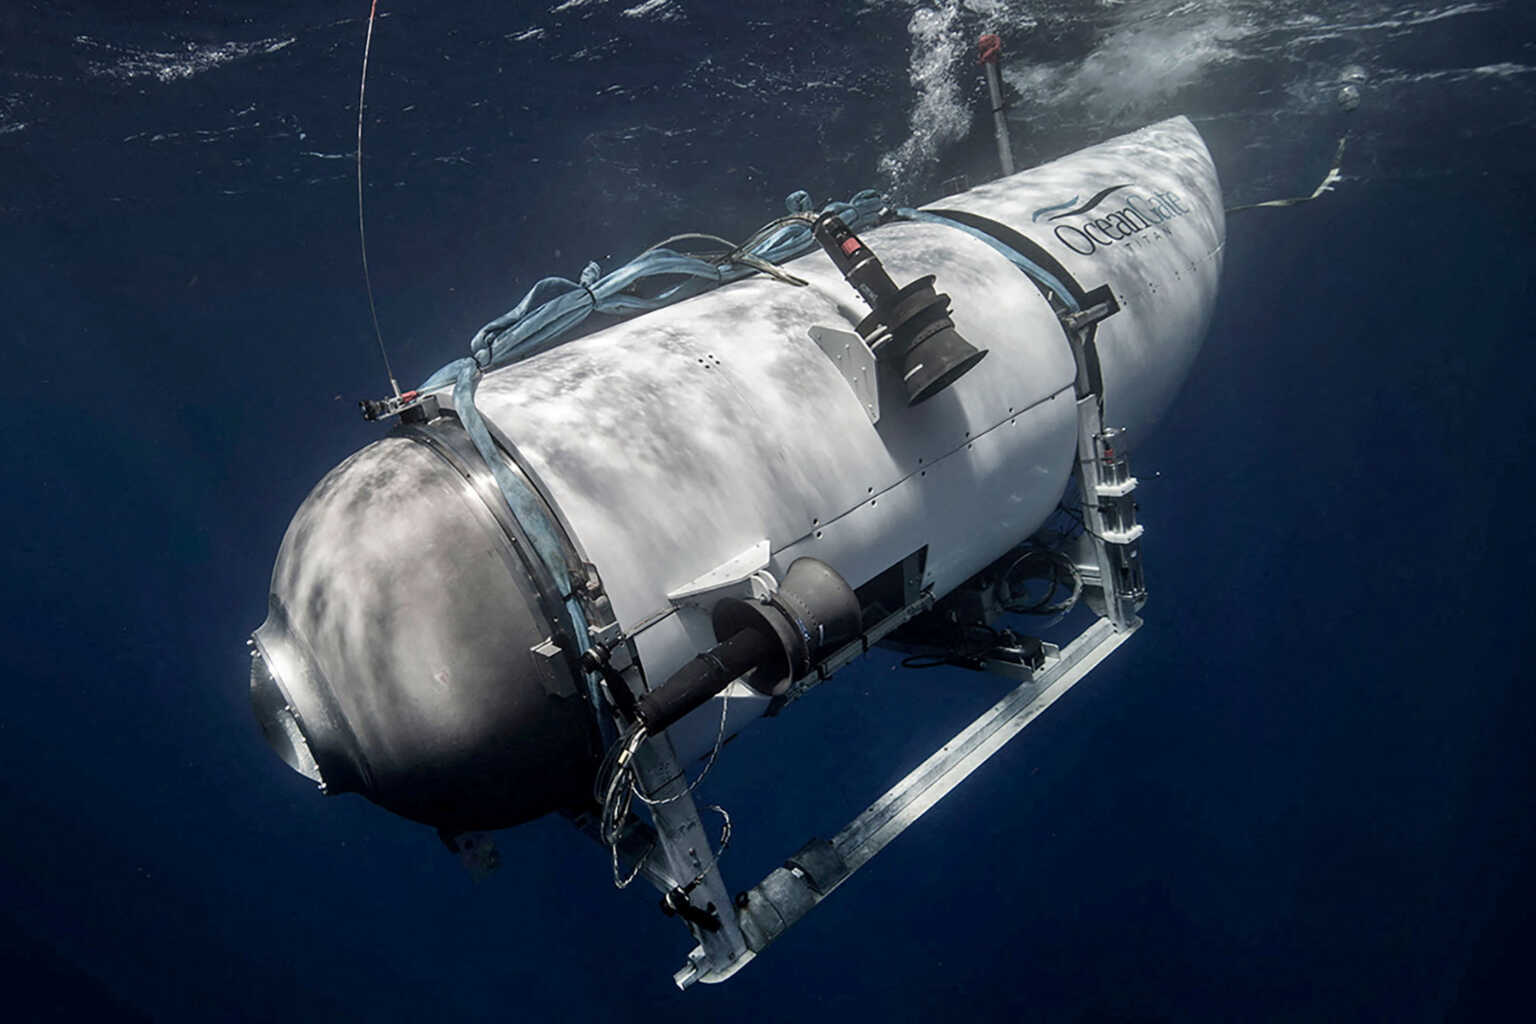 Τιτανικός: «Και οι 5 επιβάτες στο υποβρύχιο Titan είναι νεκροί» λέει η εταιρεία OceanGate Expeditions